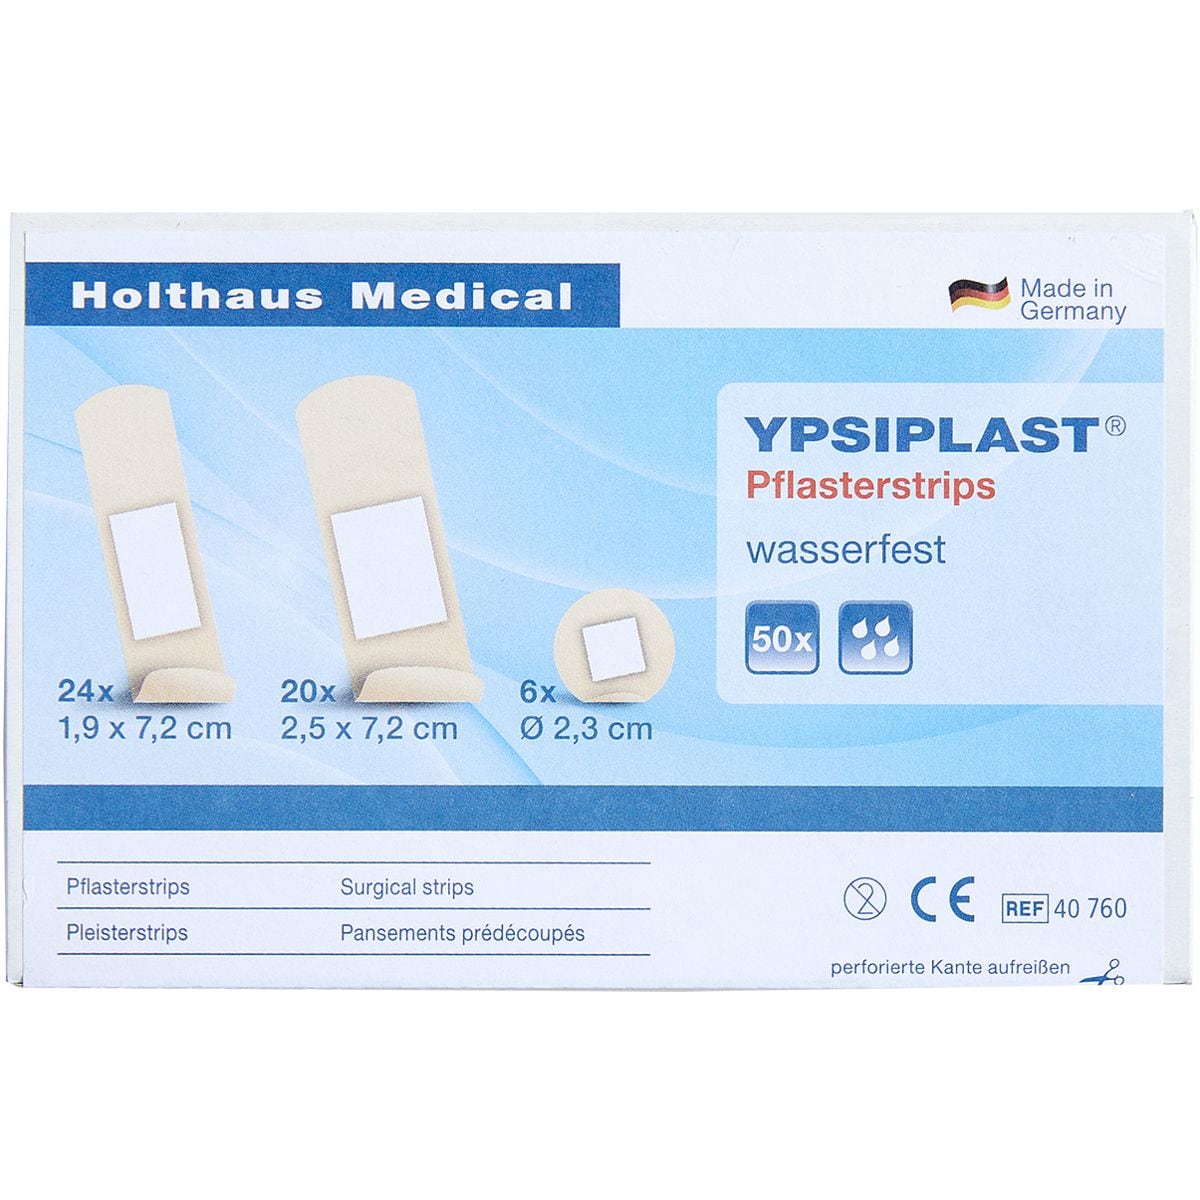 Holthaus Medical YPSIPLAST® Pflasterstrips, wasserfest